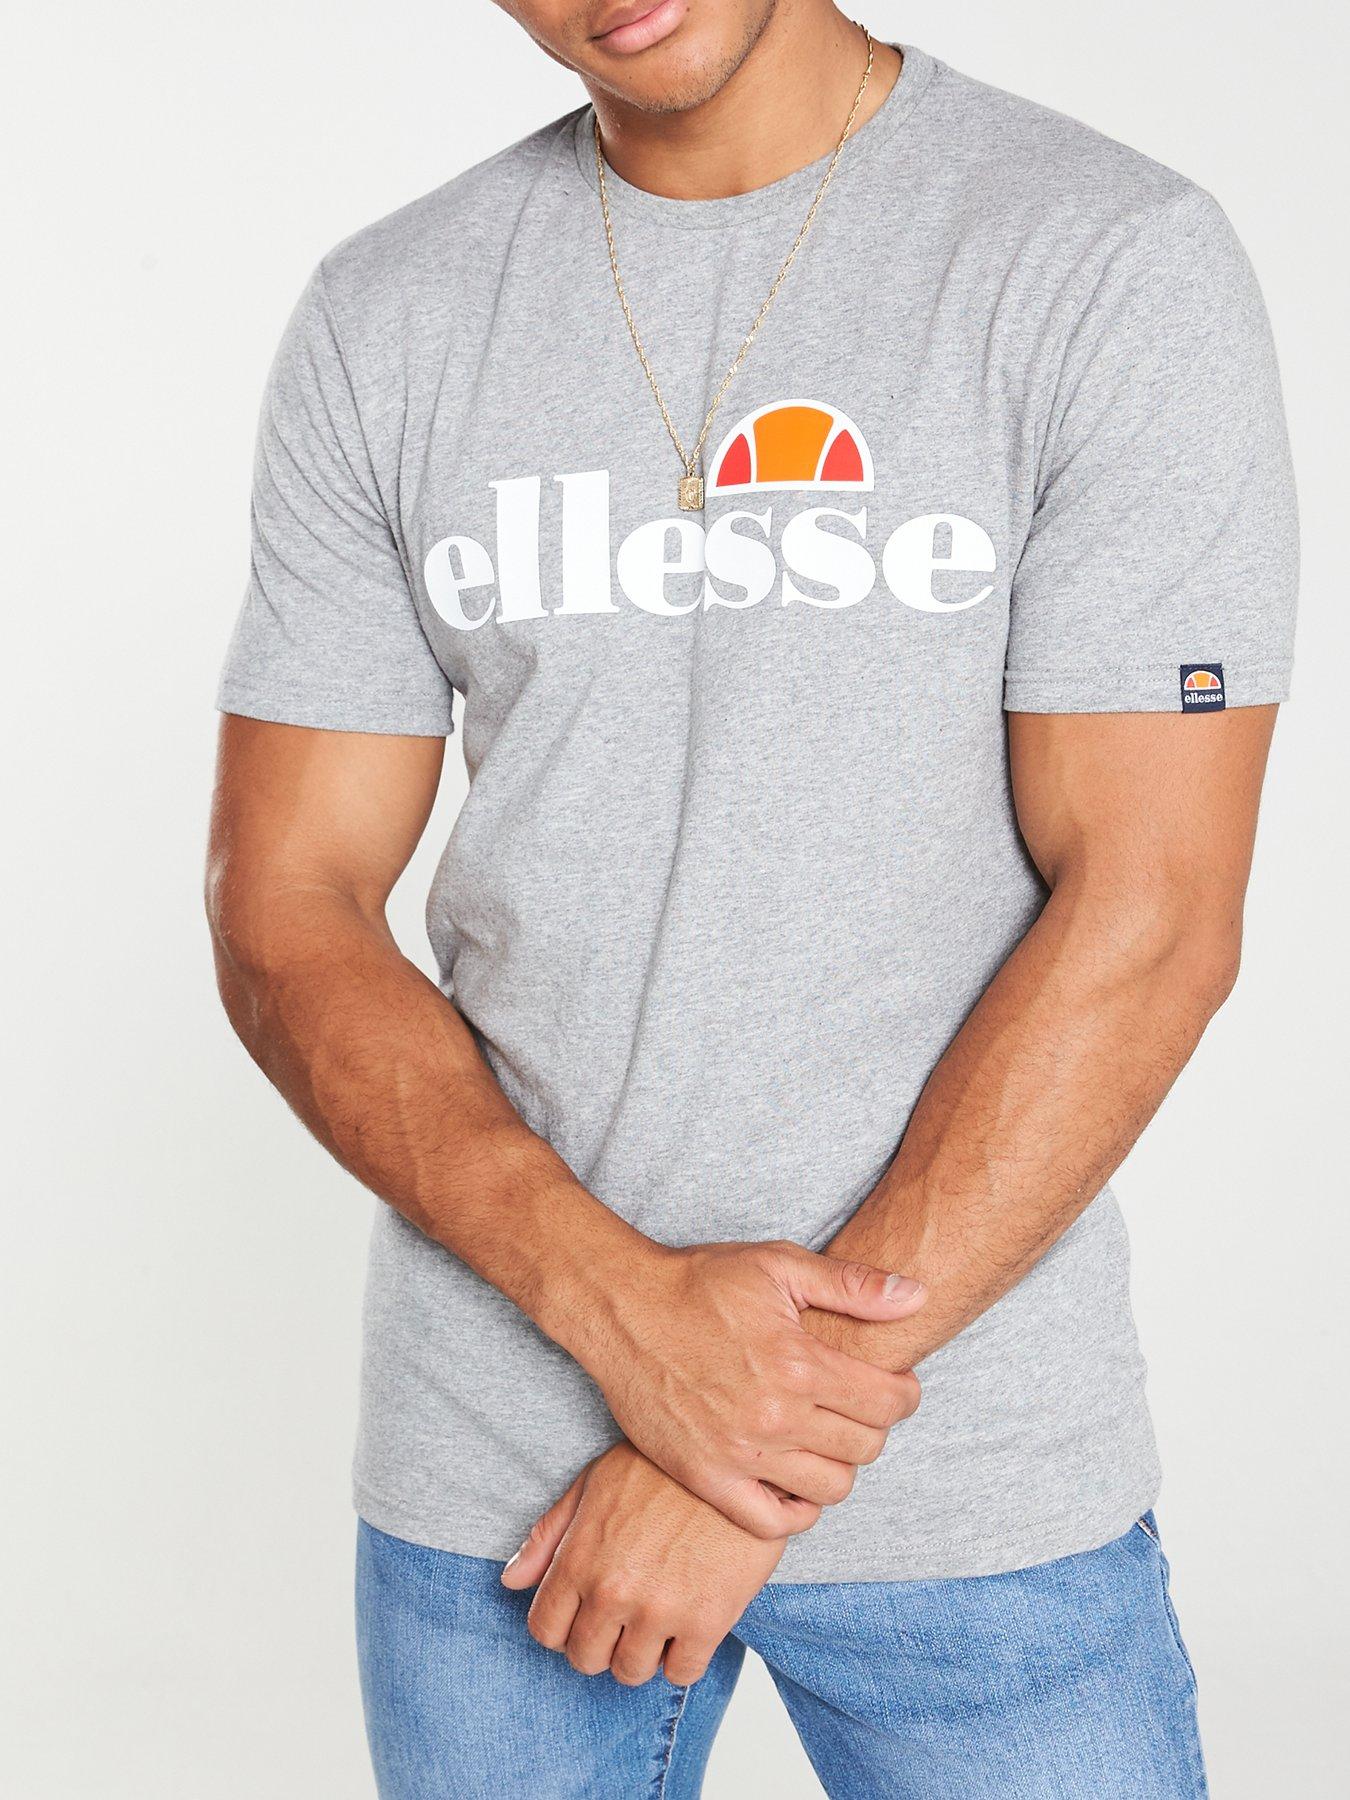 Ellesse - Big Logo Prado T-shirt in White